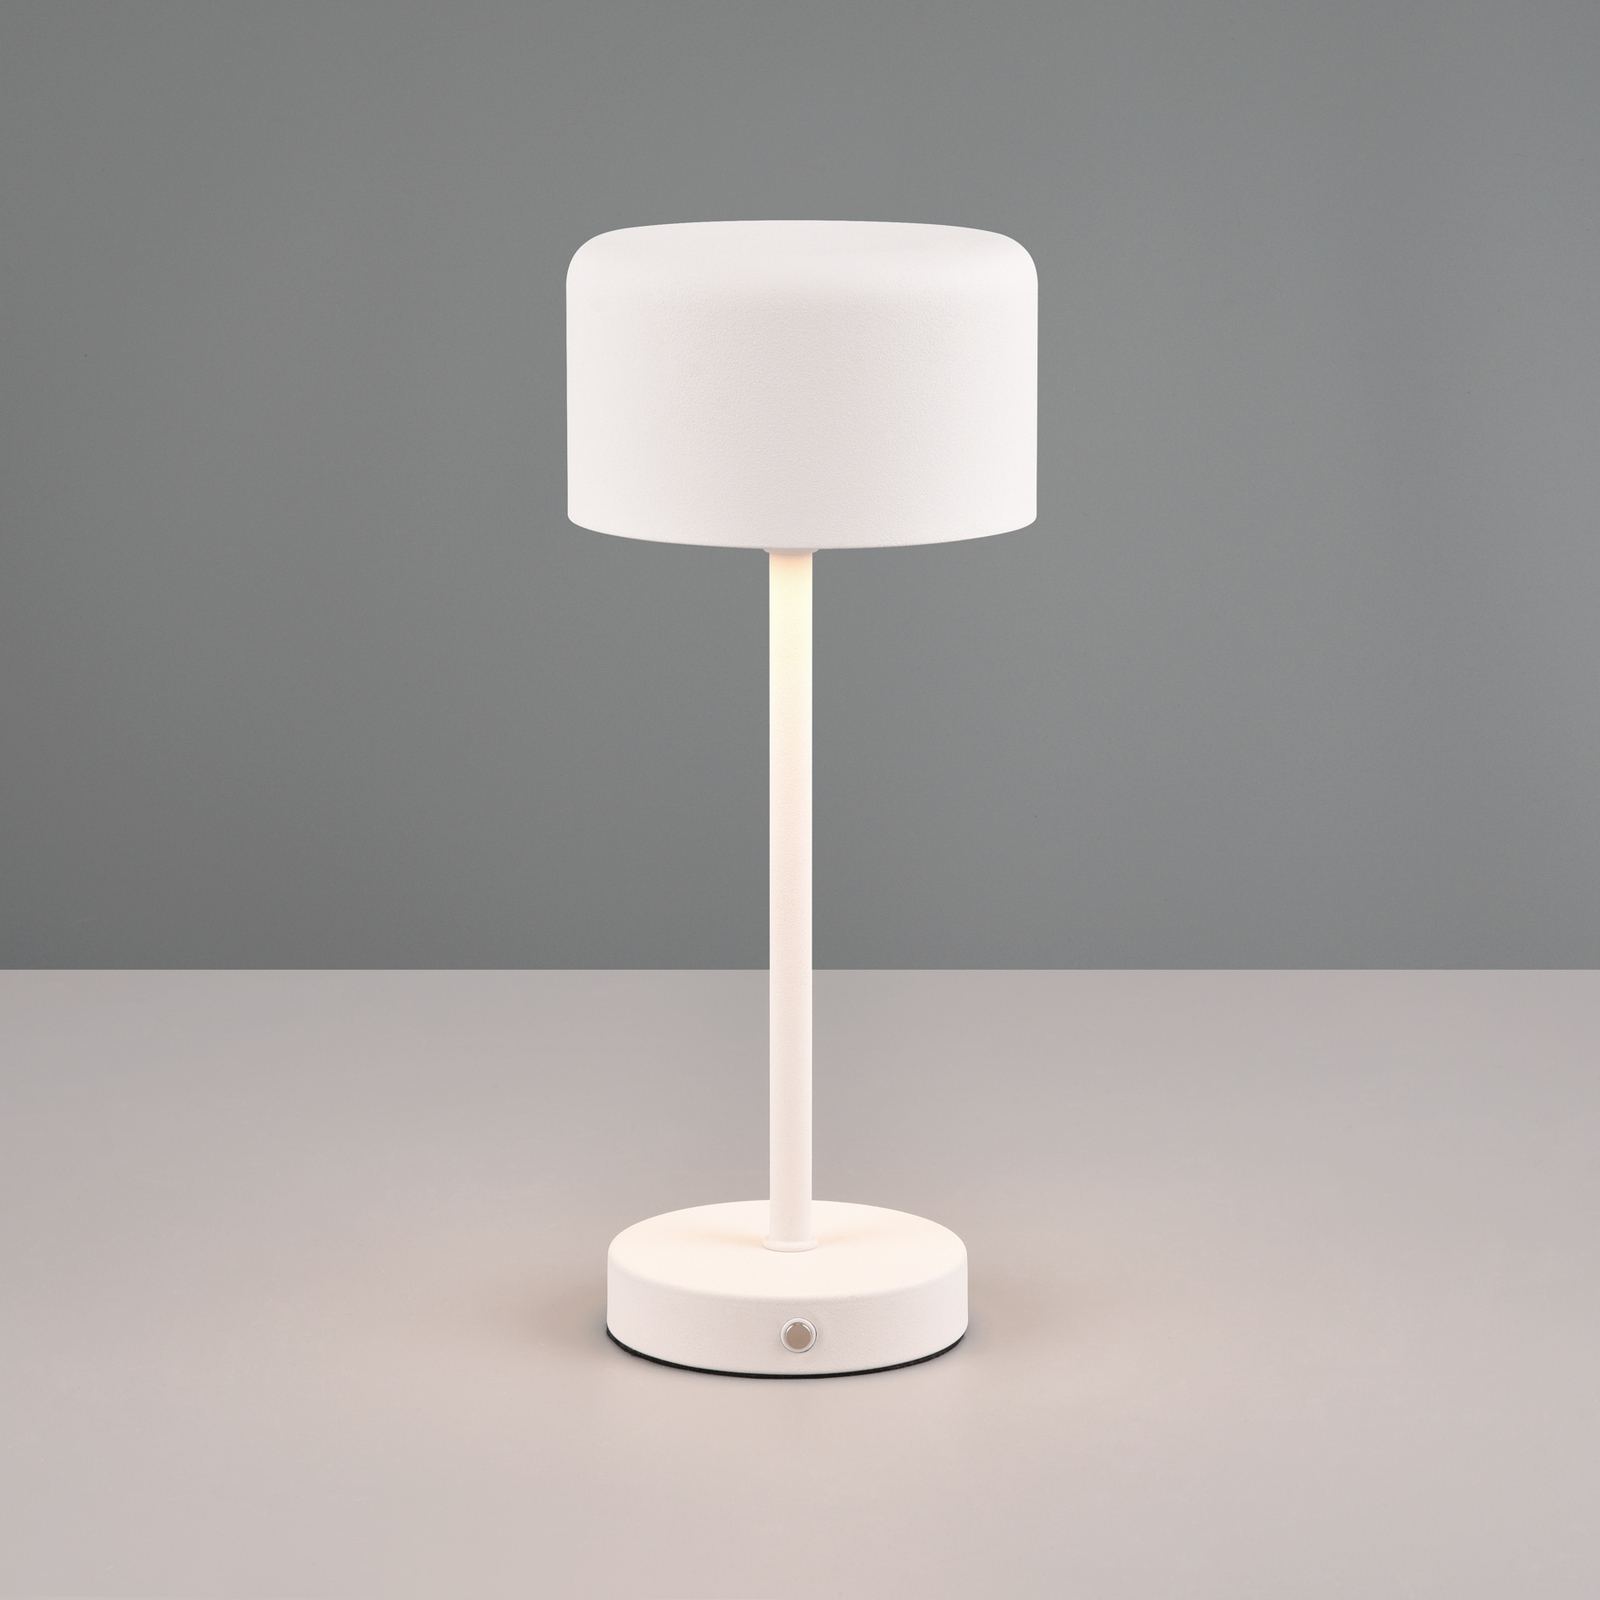 Jeff LED-es újratölthető asztali lámpa, matt fehér, magasság 30 cm, fém